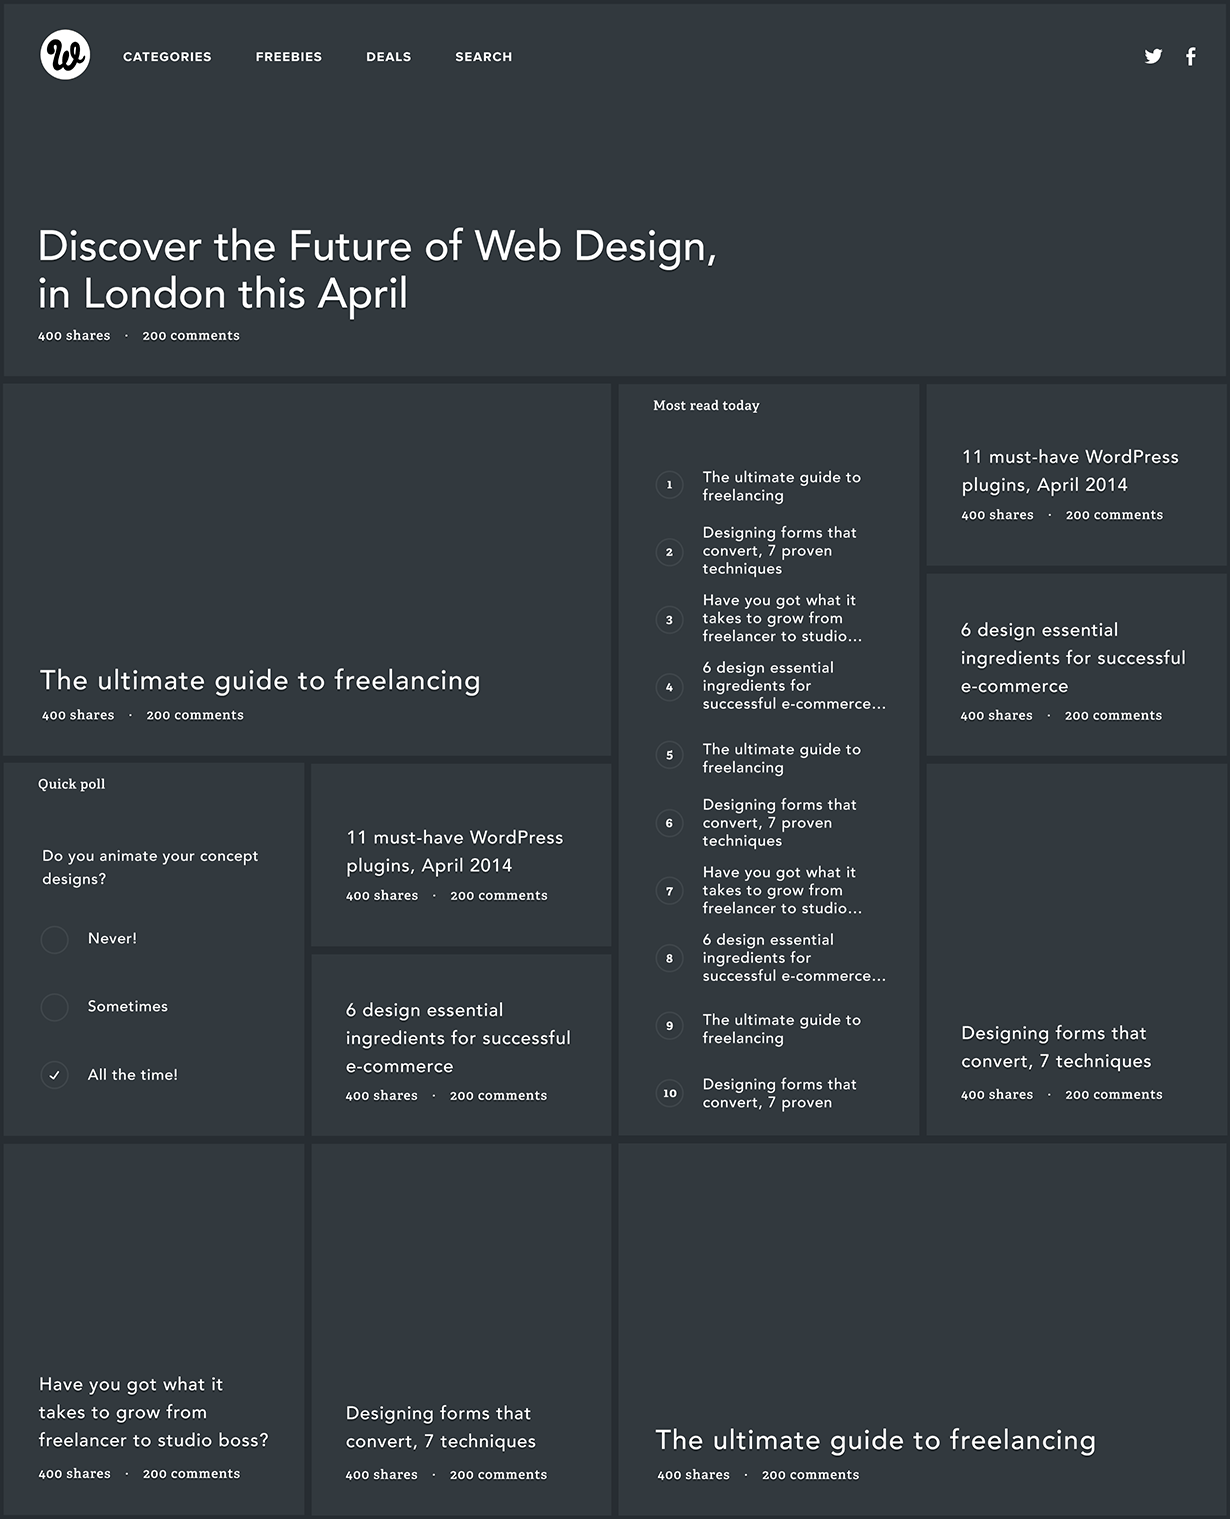 Exploring grids for Webdesigner Depot